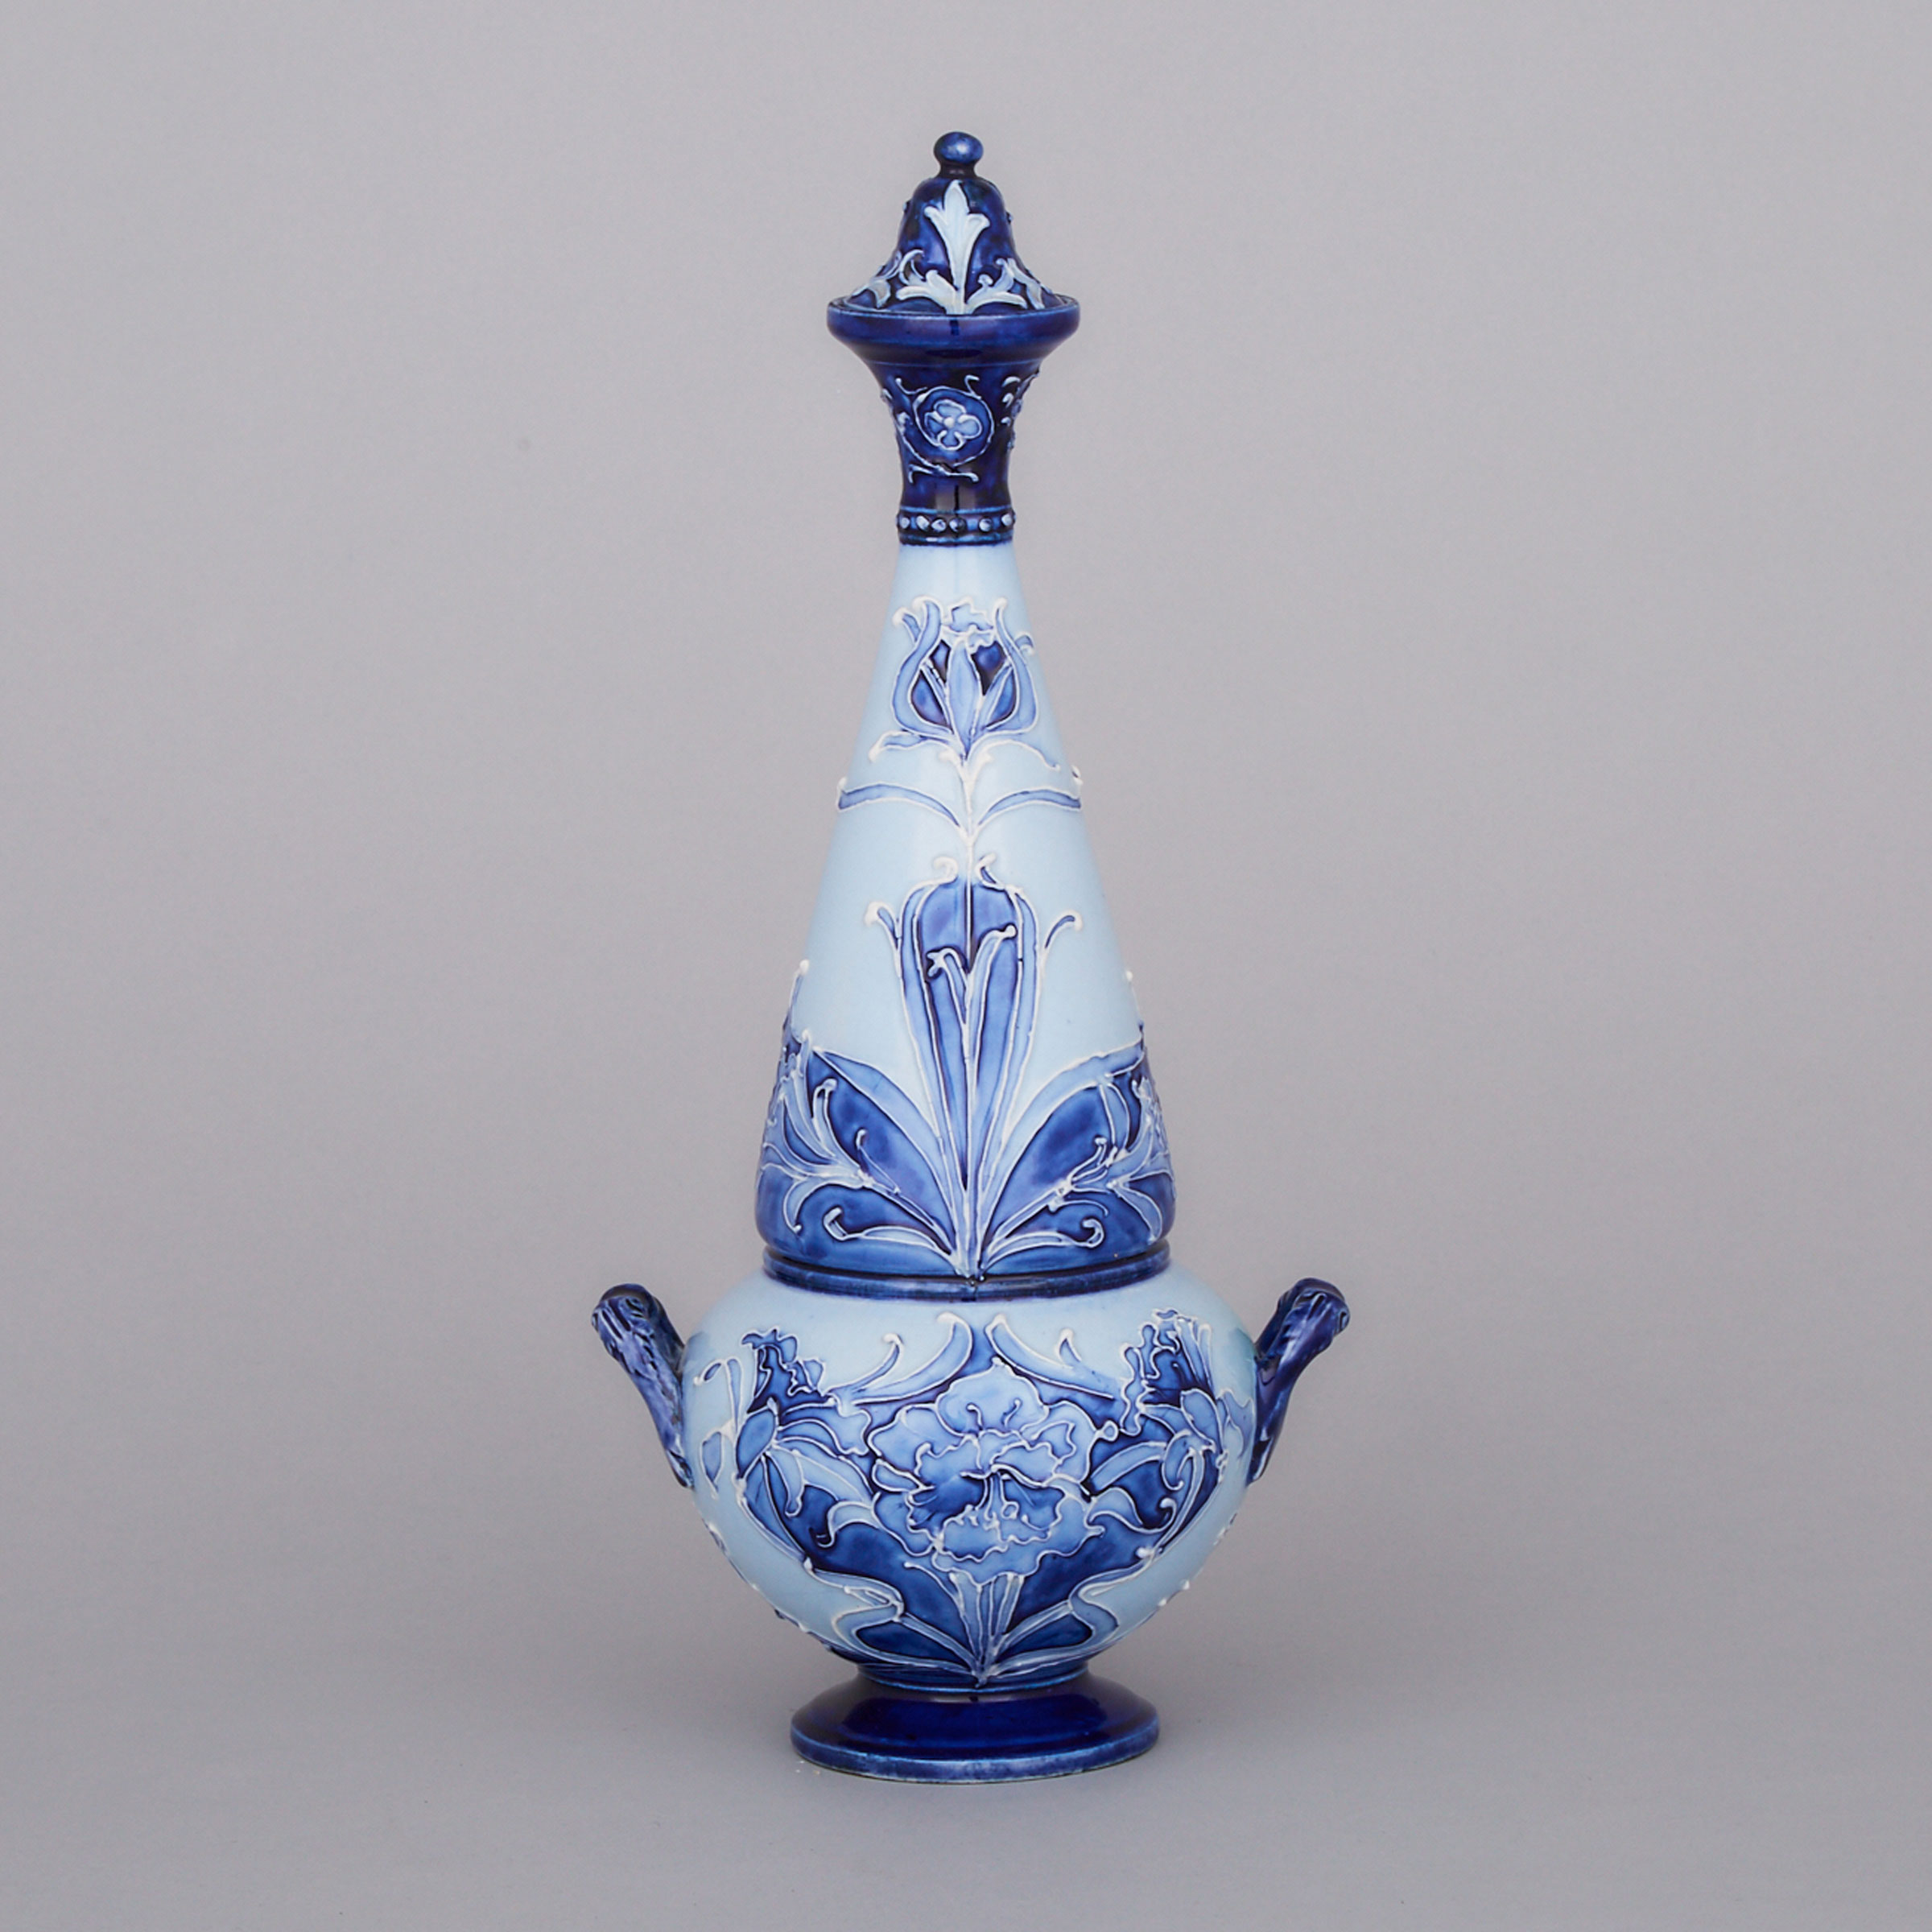 Macintyre Moorcroft Florian Ware Two-Handled Covered Vase, c. 1900